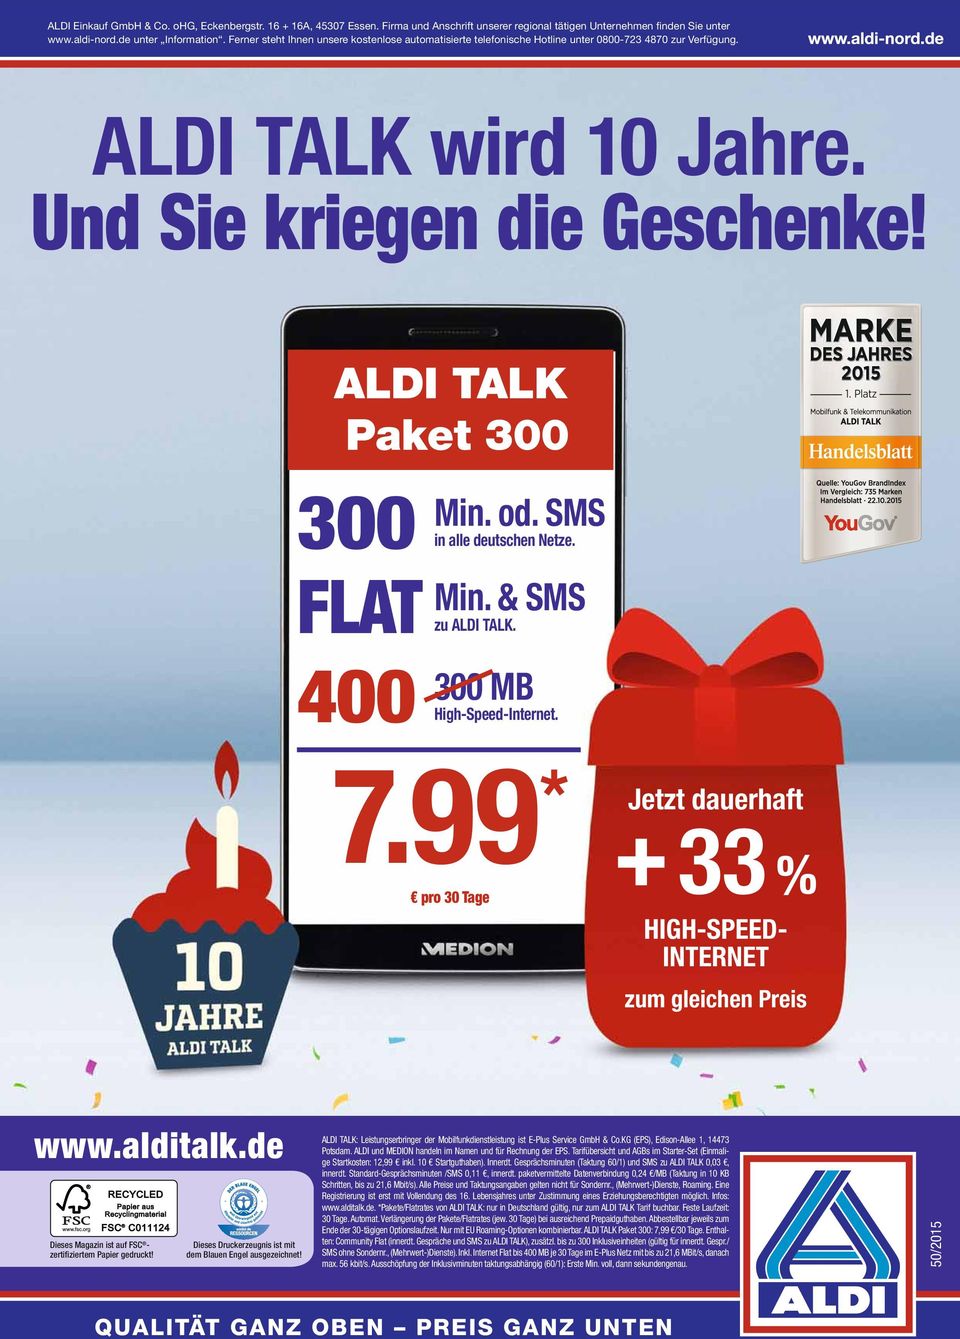 Platz 300 FLAT 400 Min. od. SMS in alle deutschen Netze. Min. & SMS zu ALDI TALK. 300 MB High-Speed-Internet. 7.99 * pro 30 Tage Jetzt dauerhaft +33 % HIGH-SPEED- INTERNET zum gleichen Preis www.